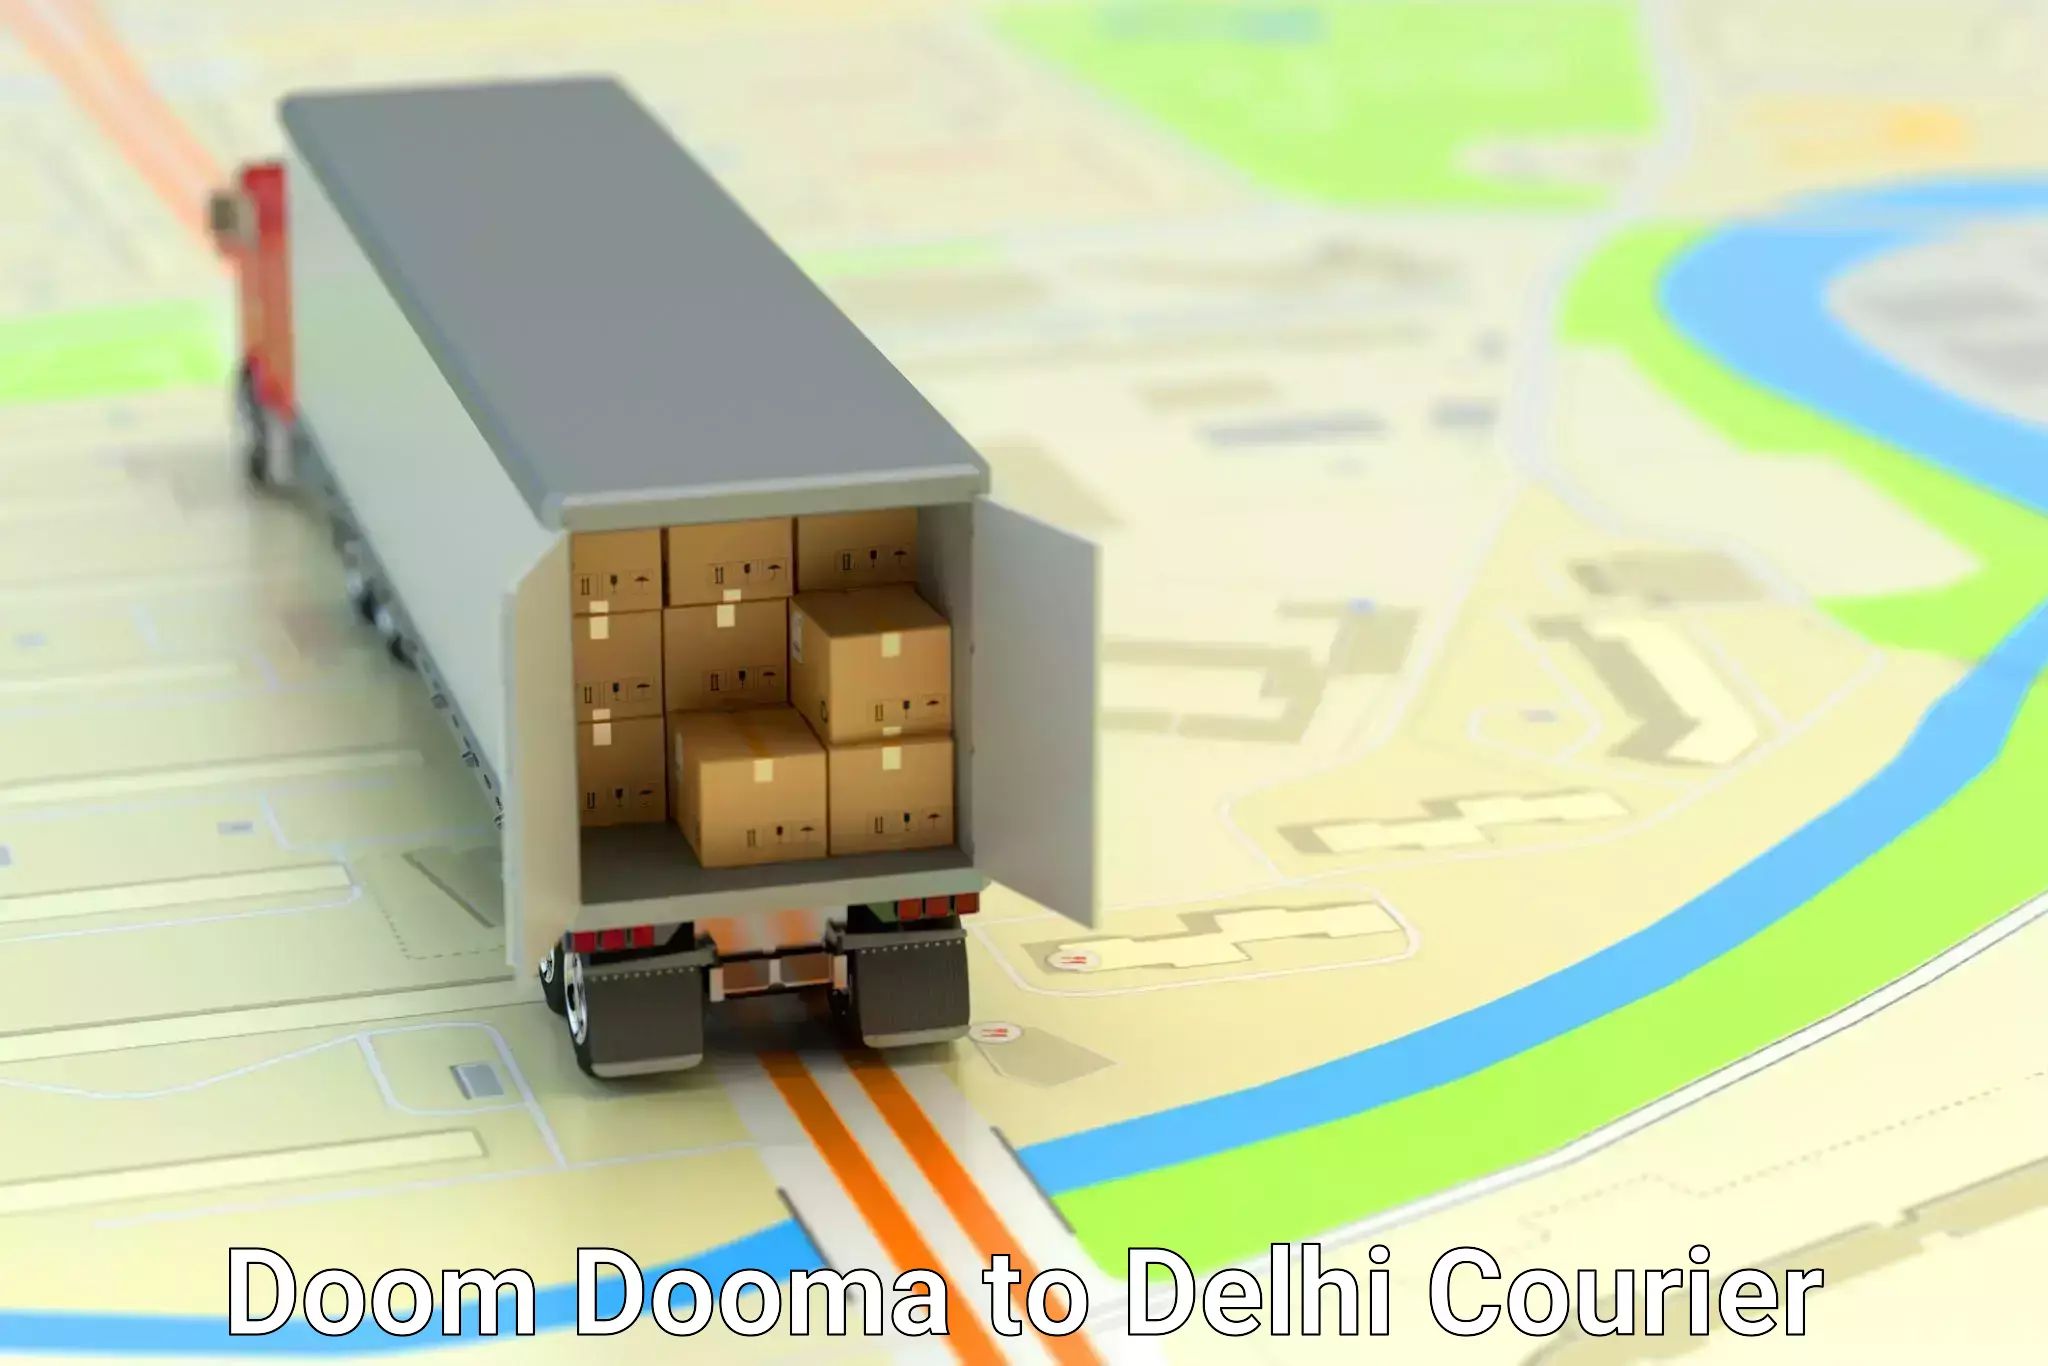 Express delivery capabilities Doom Dooma to Ashok Vihar